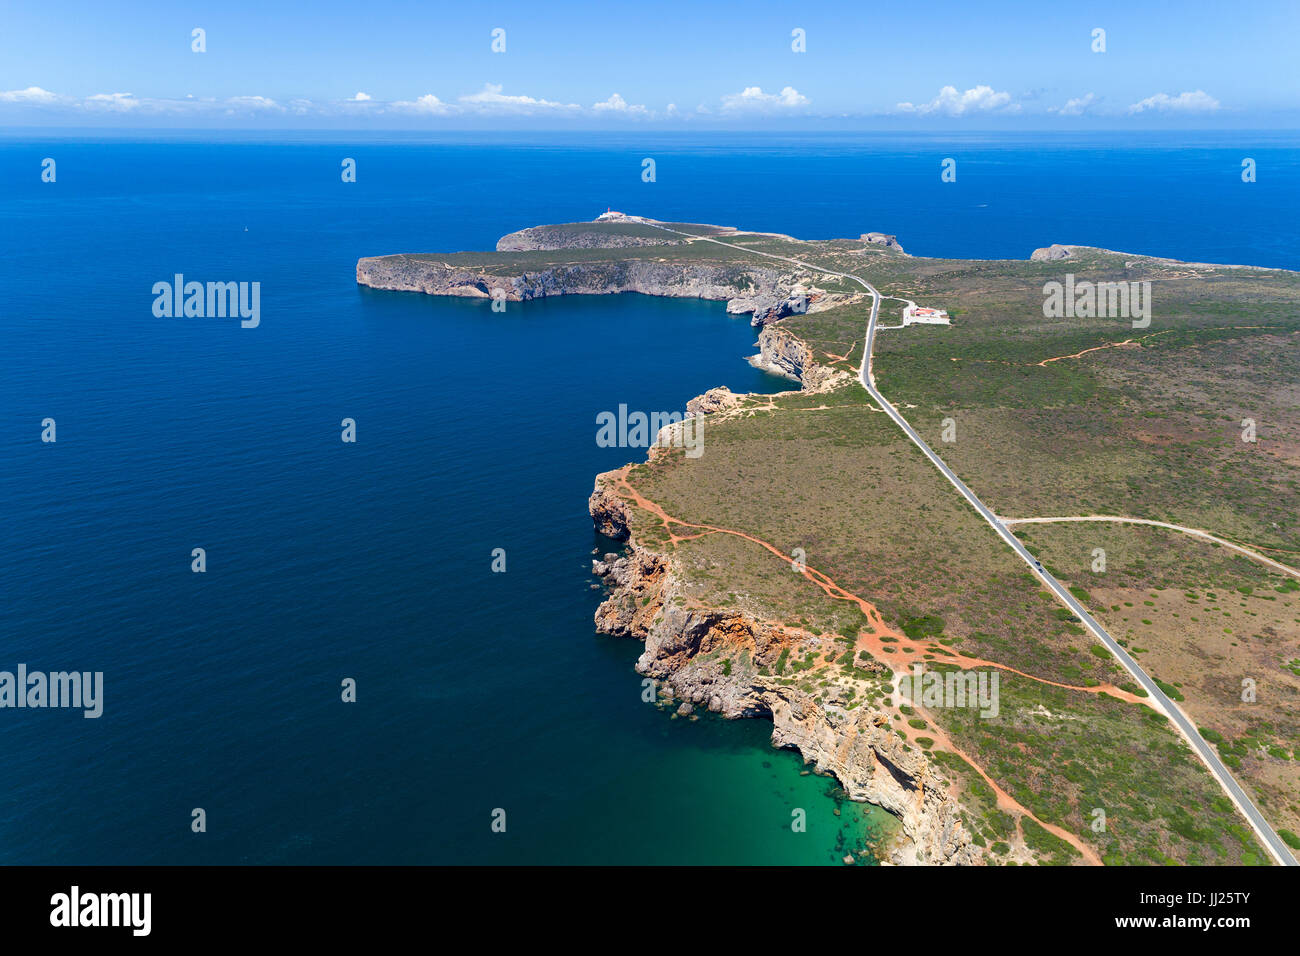 Vue aérienne du Cap Saint-vincent (Cabo de Sao Vincente), à Lagos, Algarve, Portugal Banque D'Images